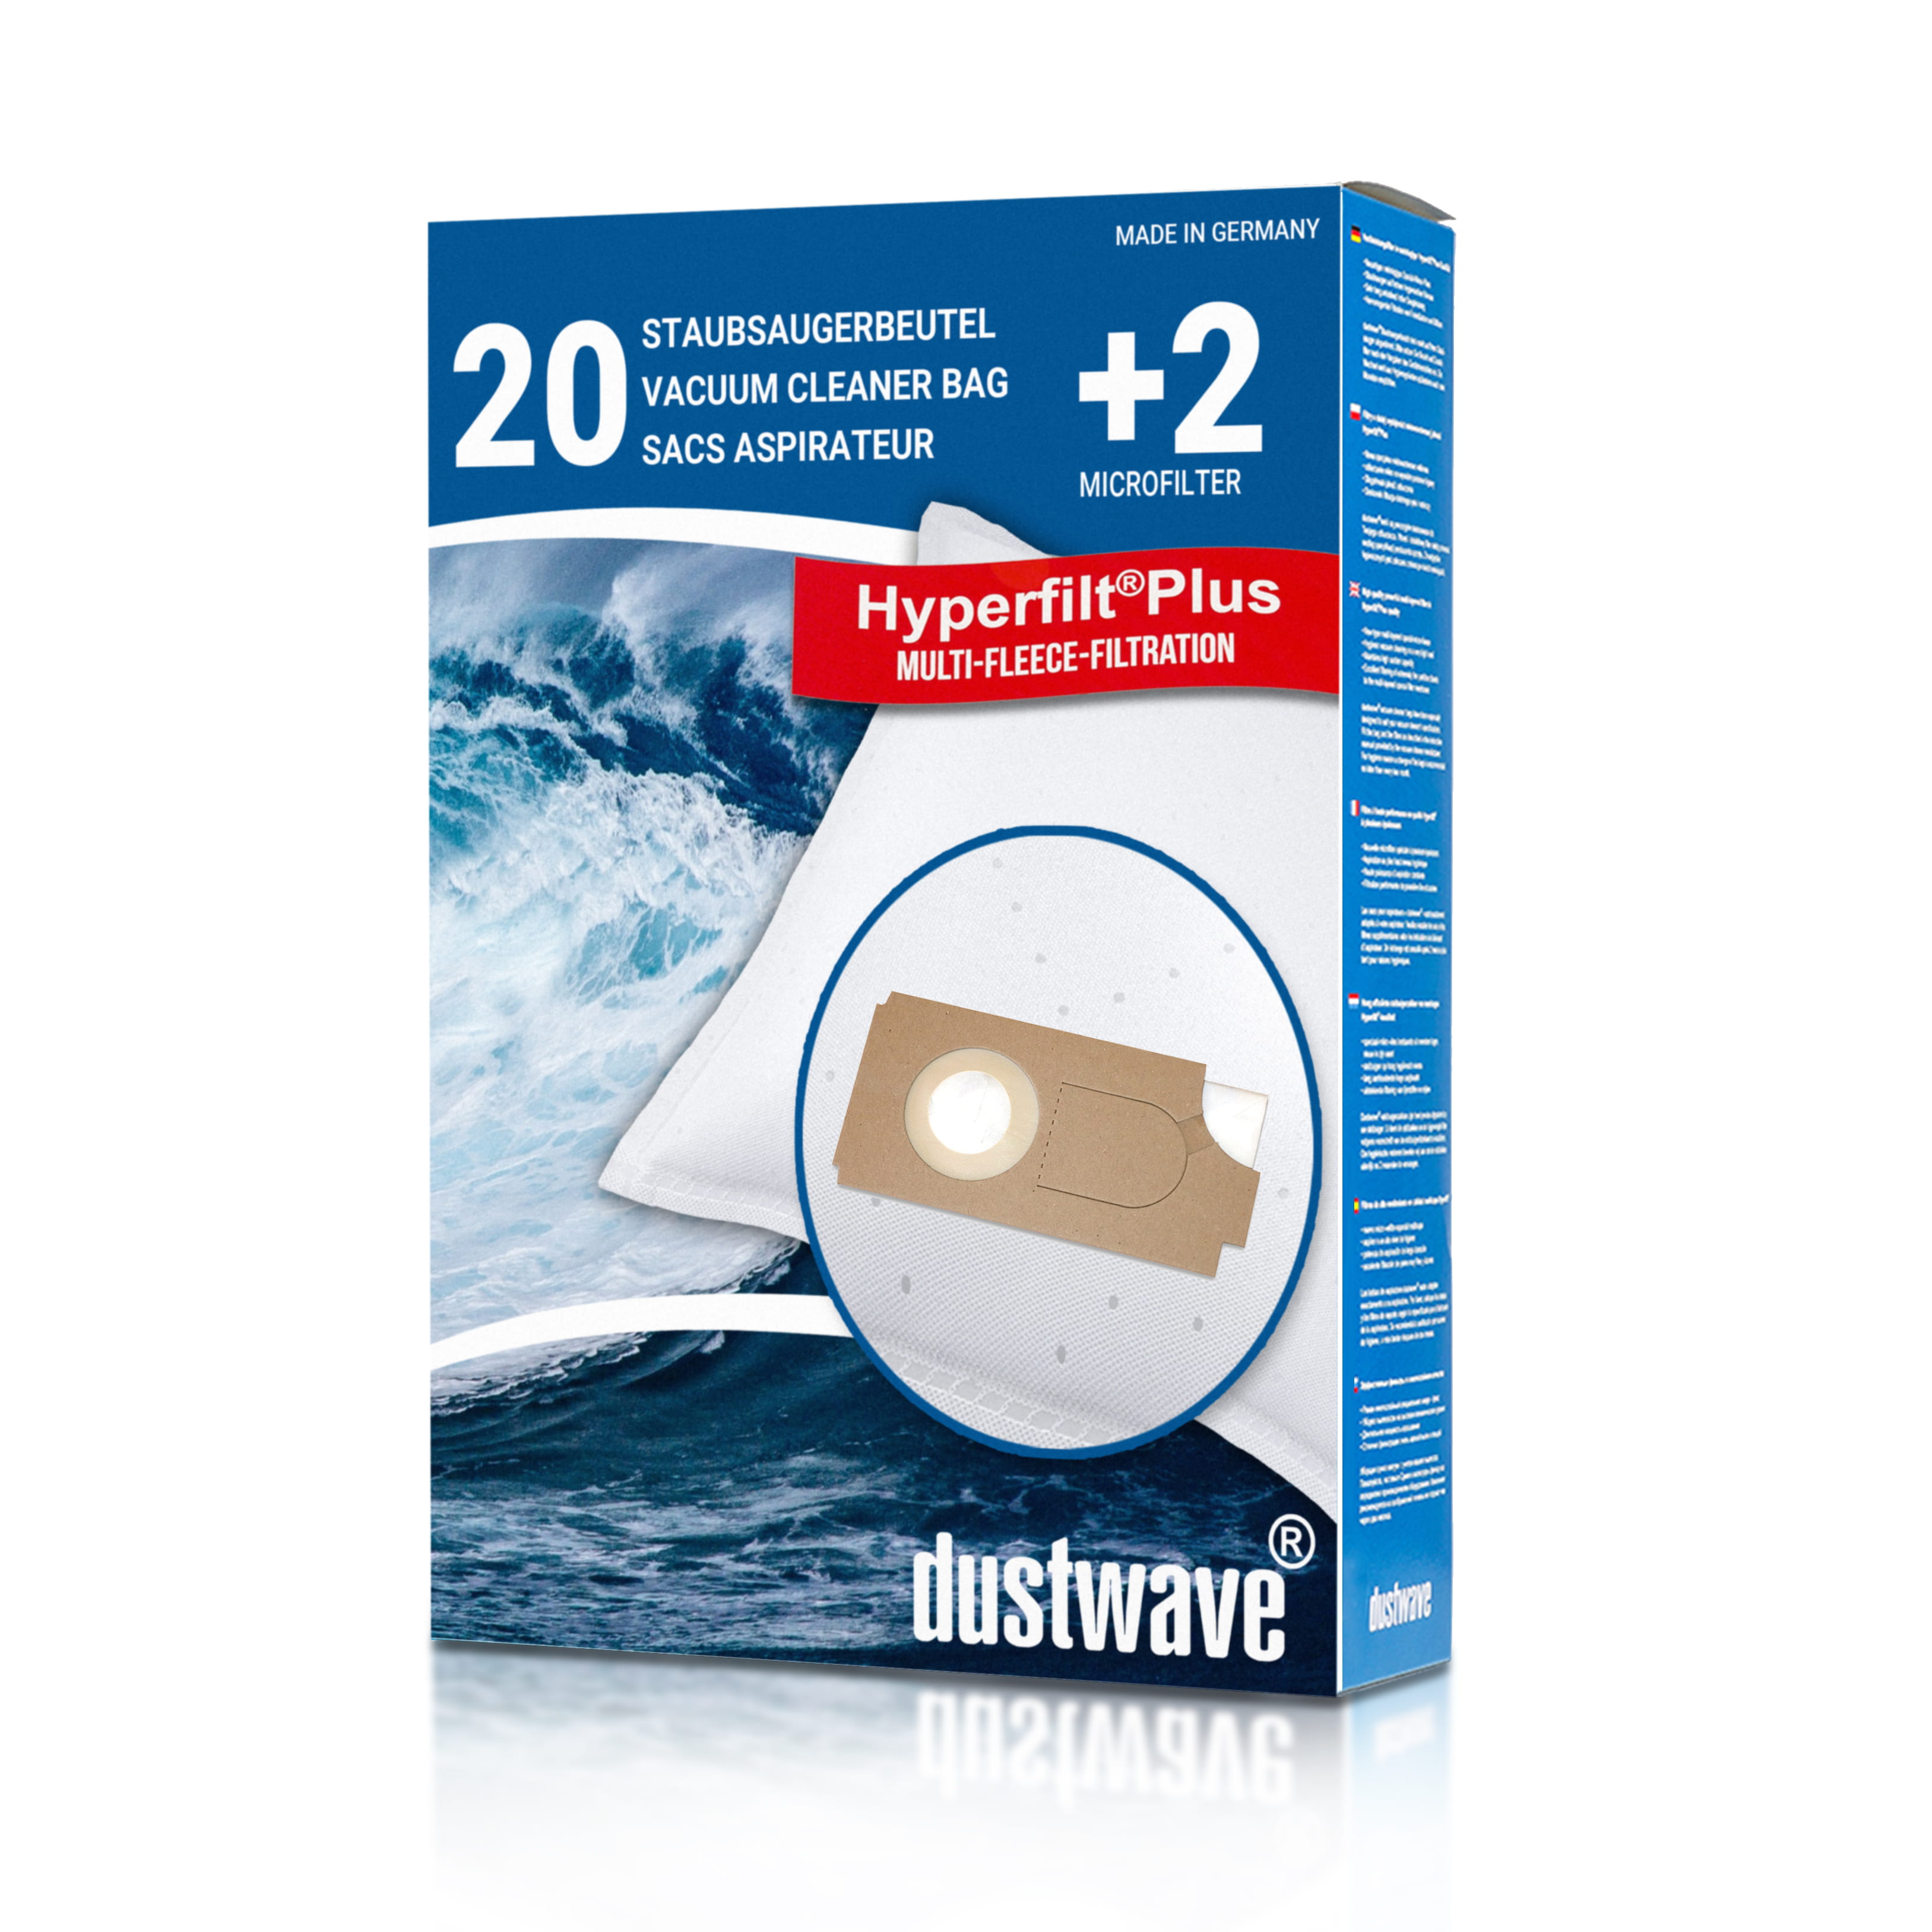 Dustwave® 20 Staubsaugerbeutel für Borema BS350 / BS 350 - hocheffizient, mehrlagiges Mikrovlies mit Hygieneverschluss - Made in Germany